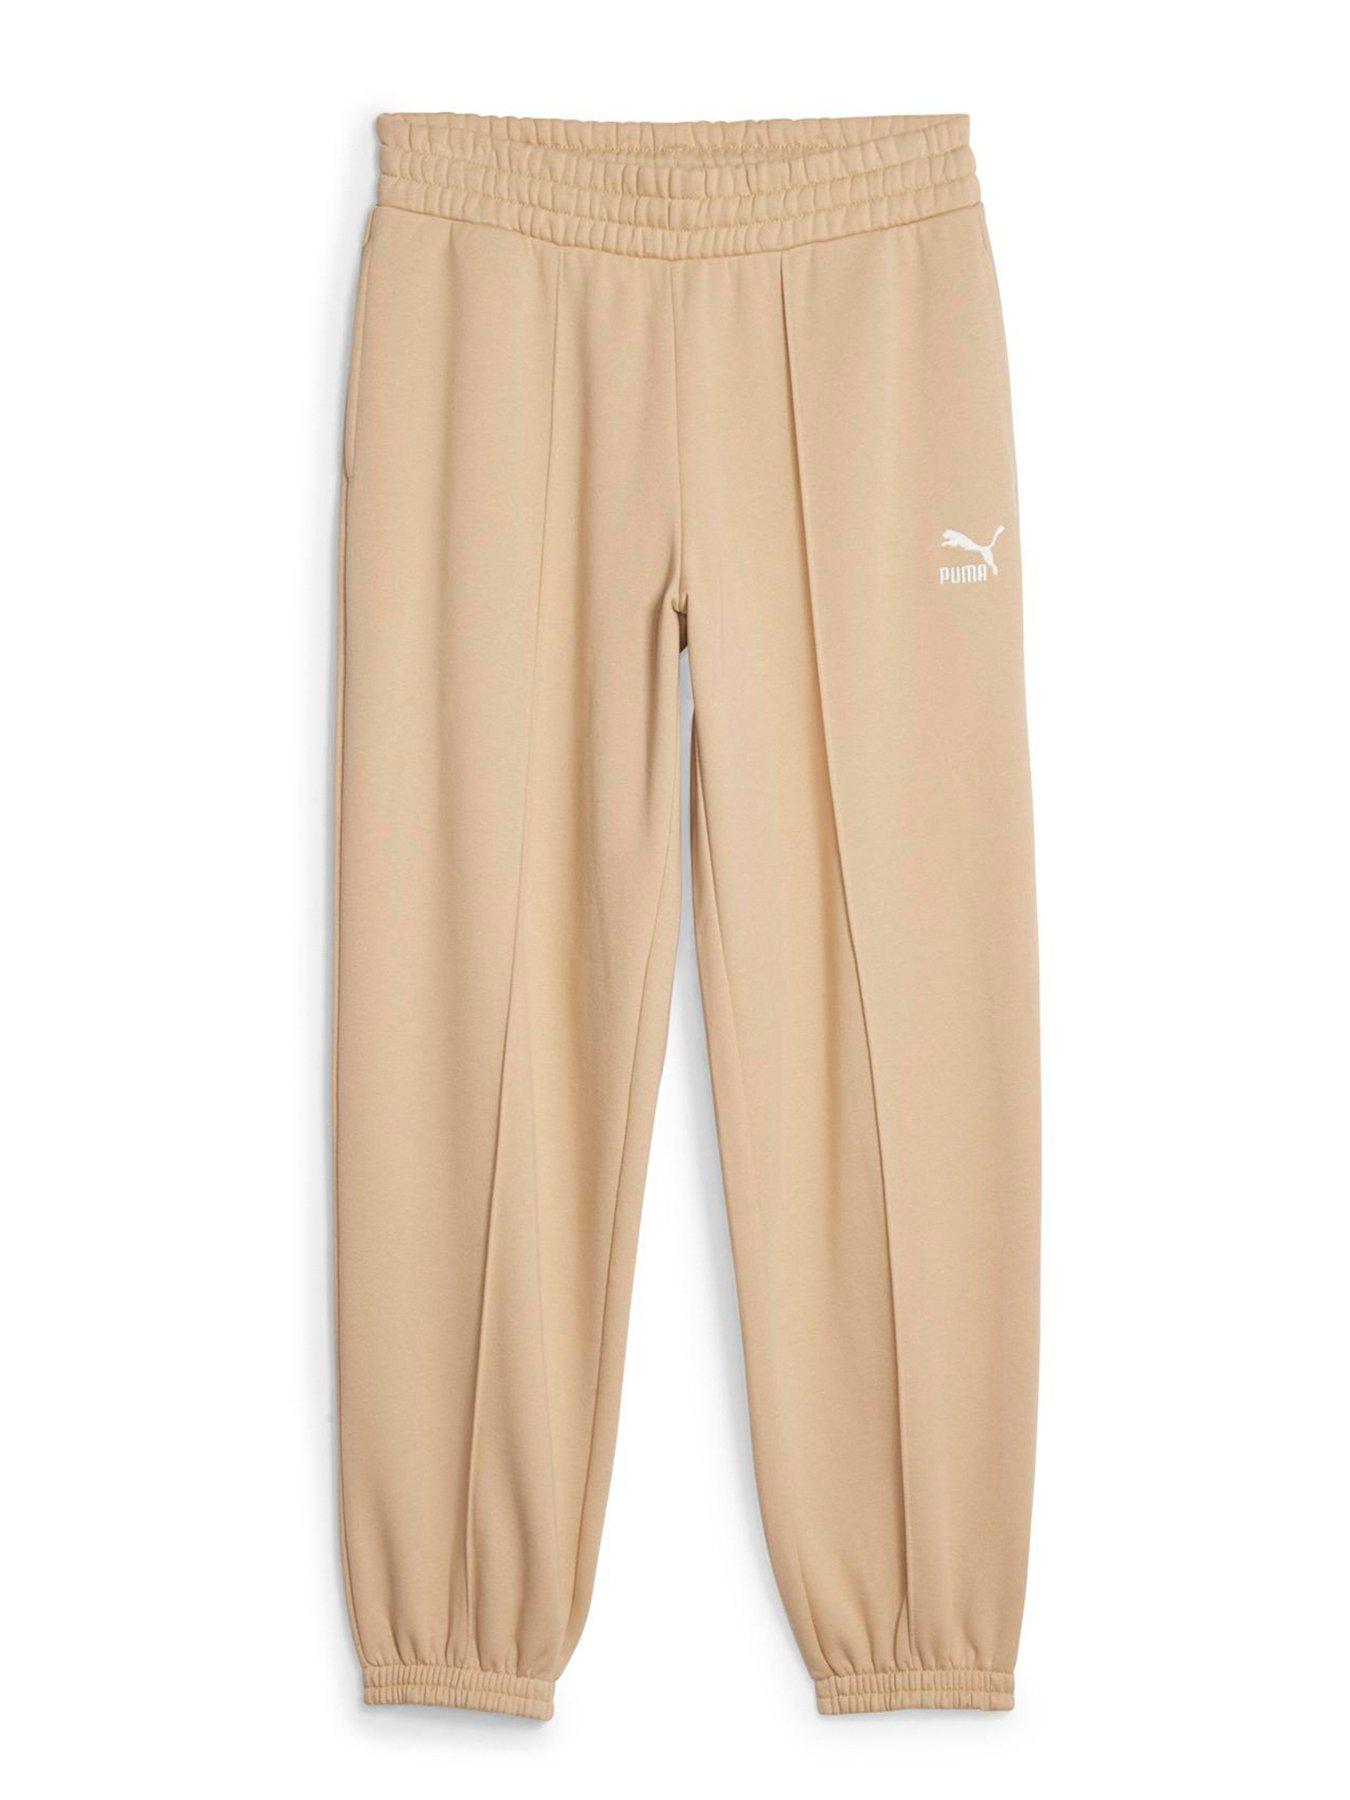 Nike Sportswear Gym Vintage Women's Pants - Beige